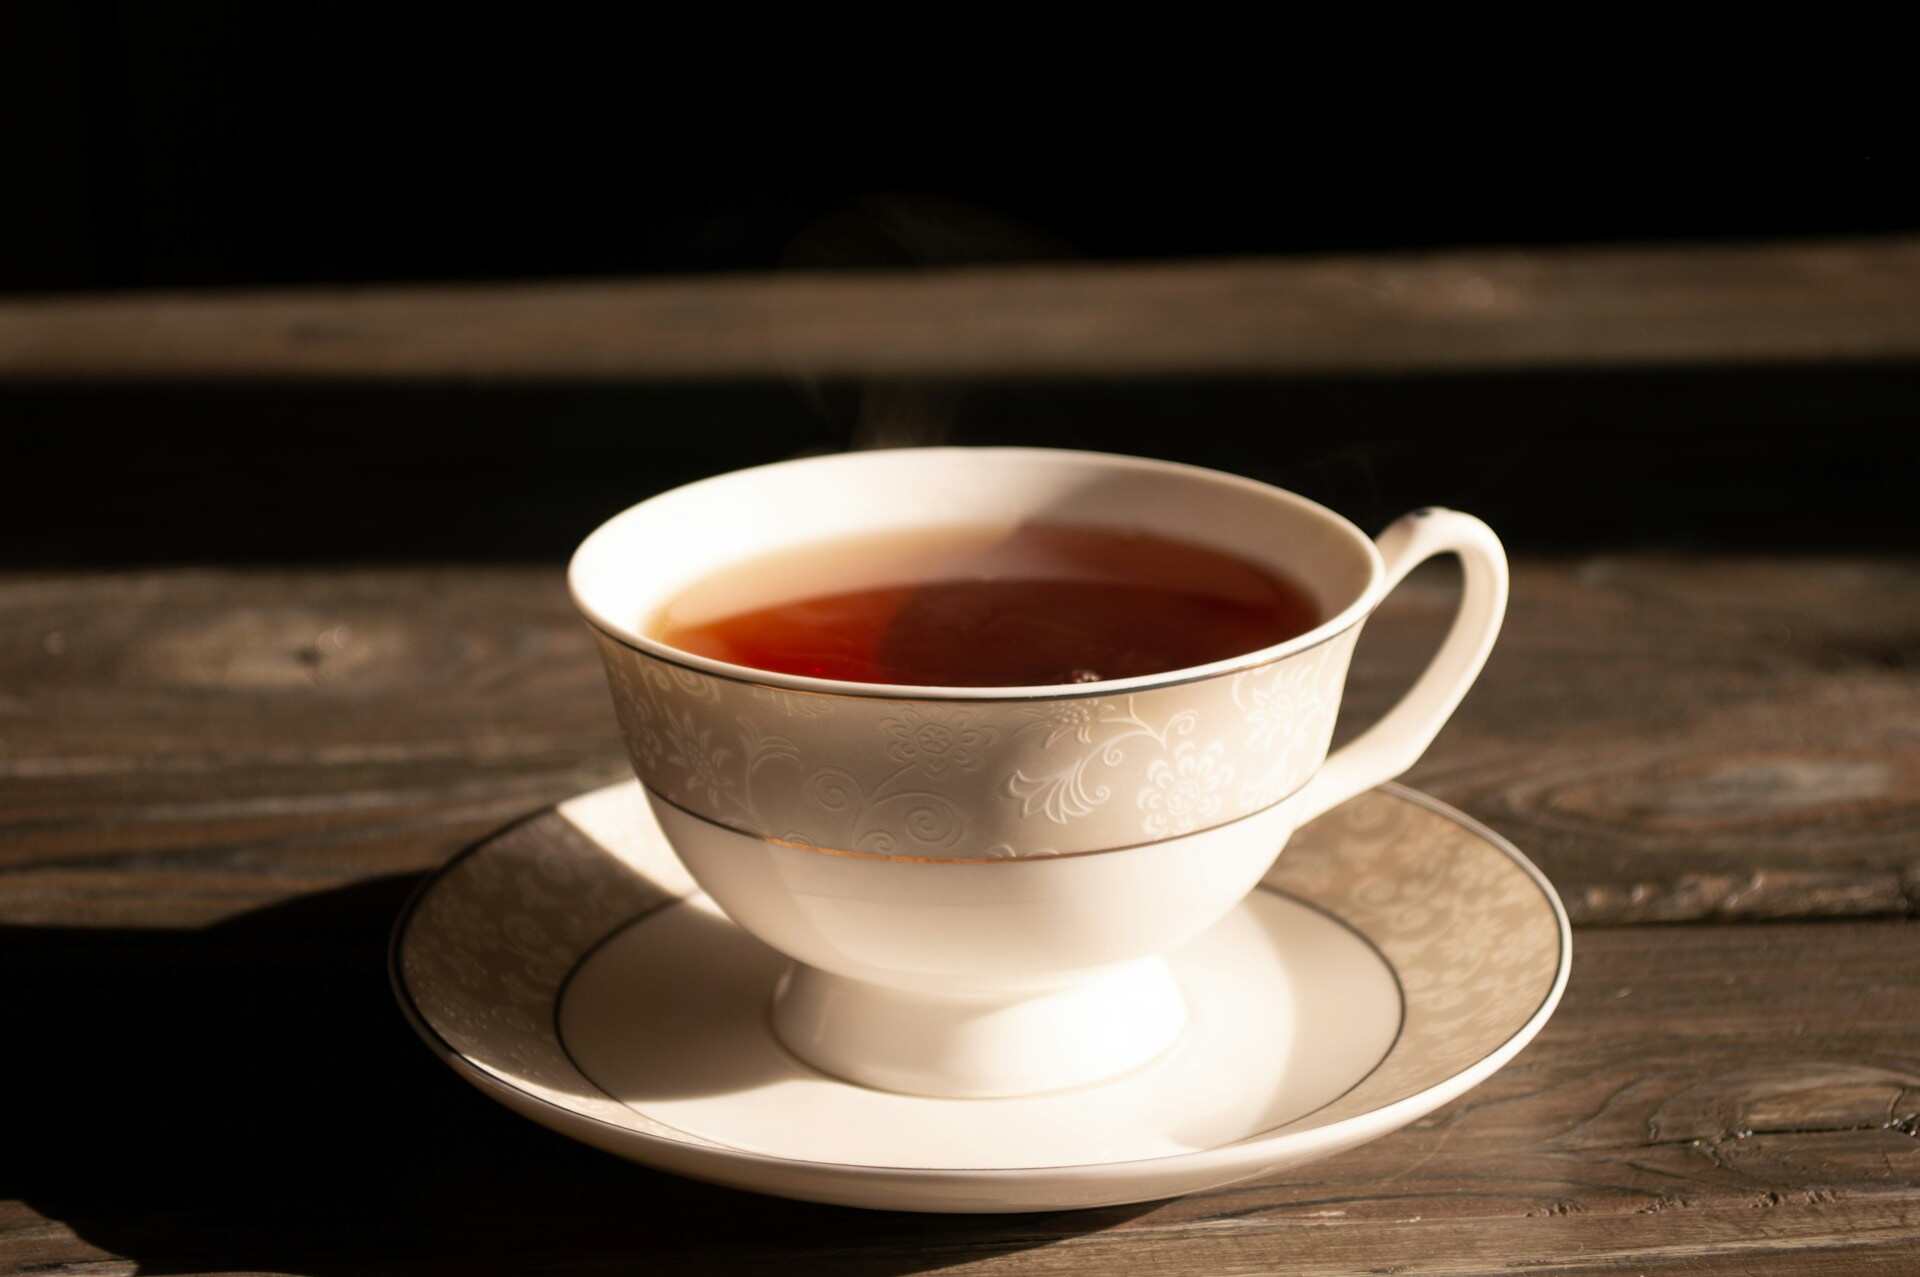 FII: ученые КНР заявили, что употребление черного чая ведет к онкологии